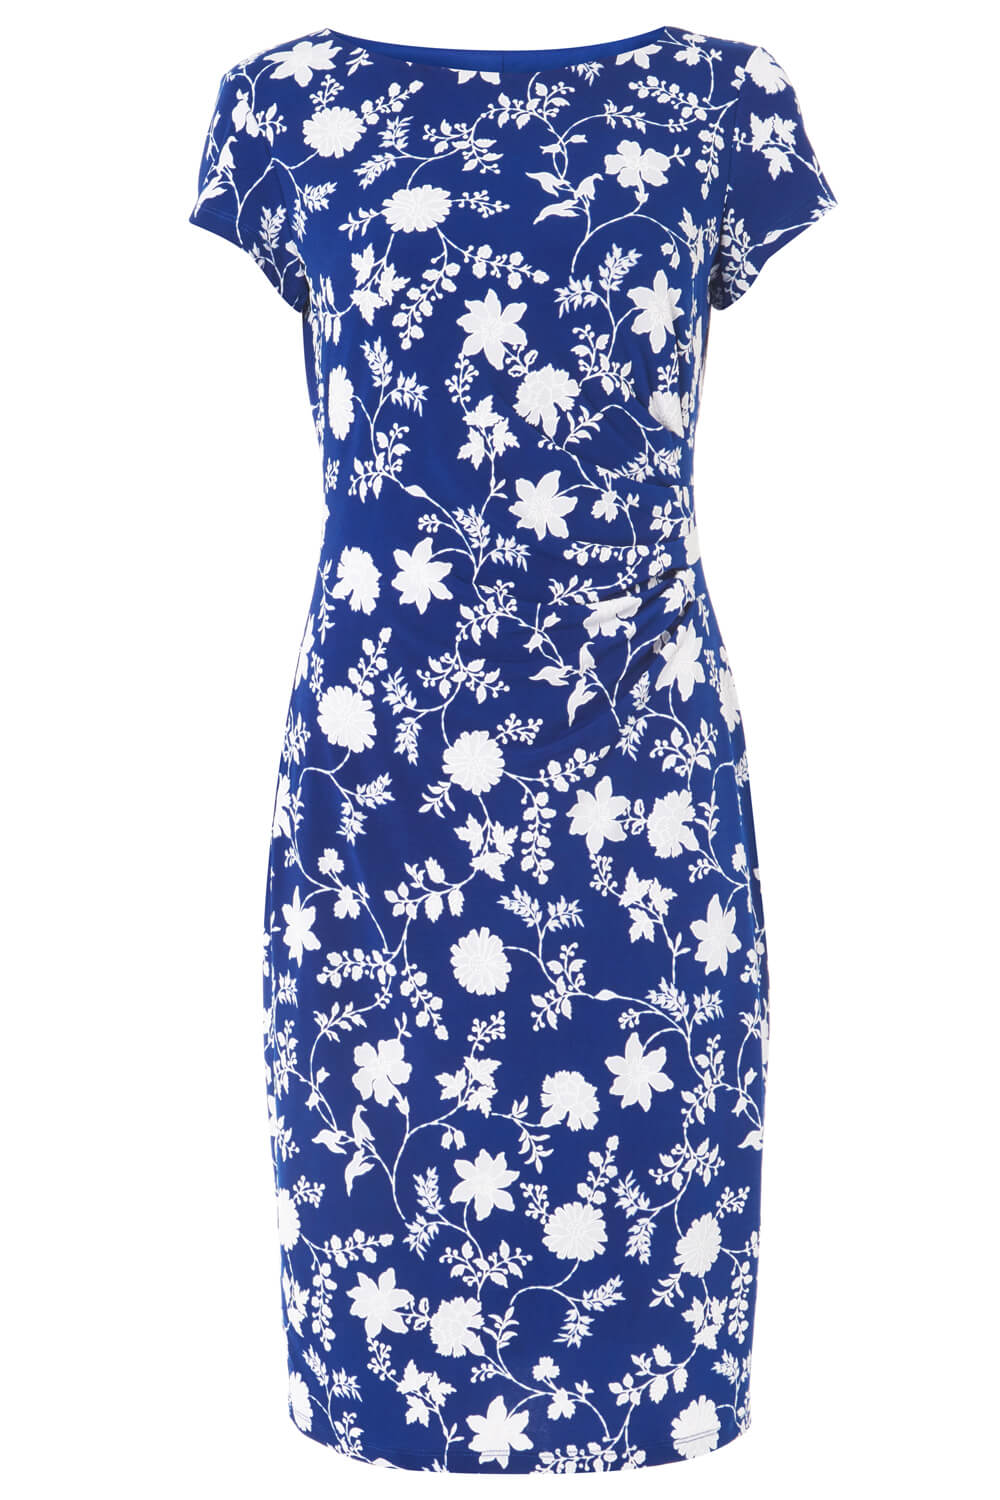 Royal Blue Floral Print Side Ruched Dress, Image 5 of 5